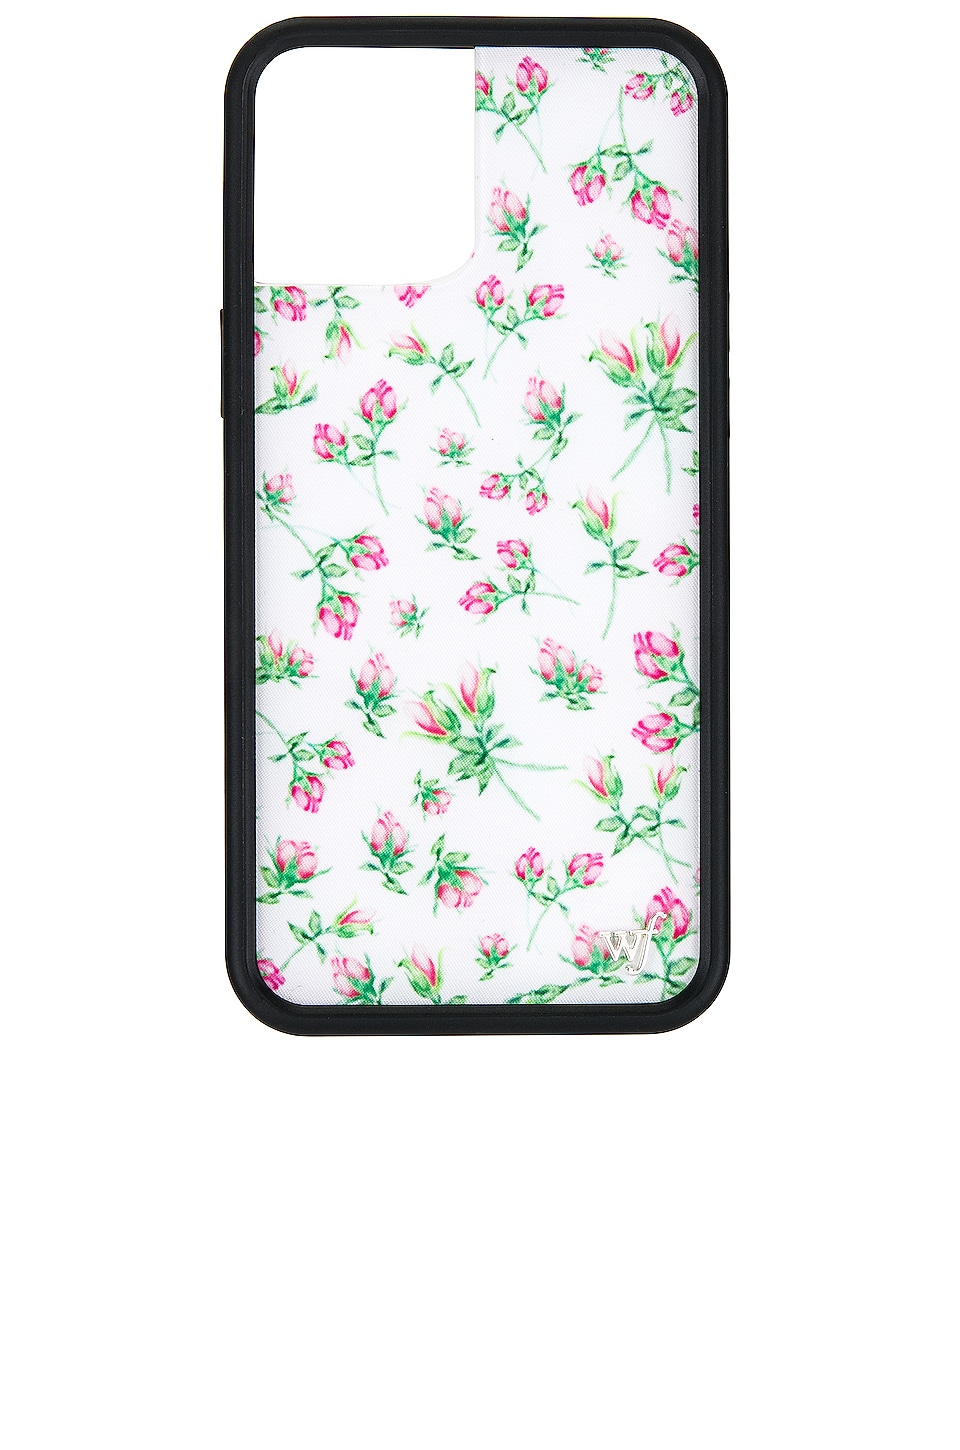 Wildflower iPhone 12 Pro Max Case in Pink Posie Rosie REVOLVE